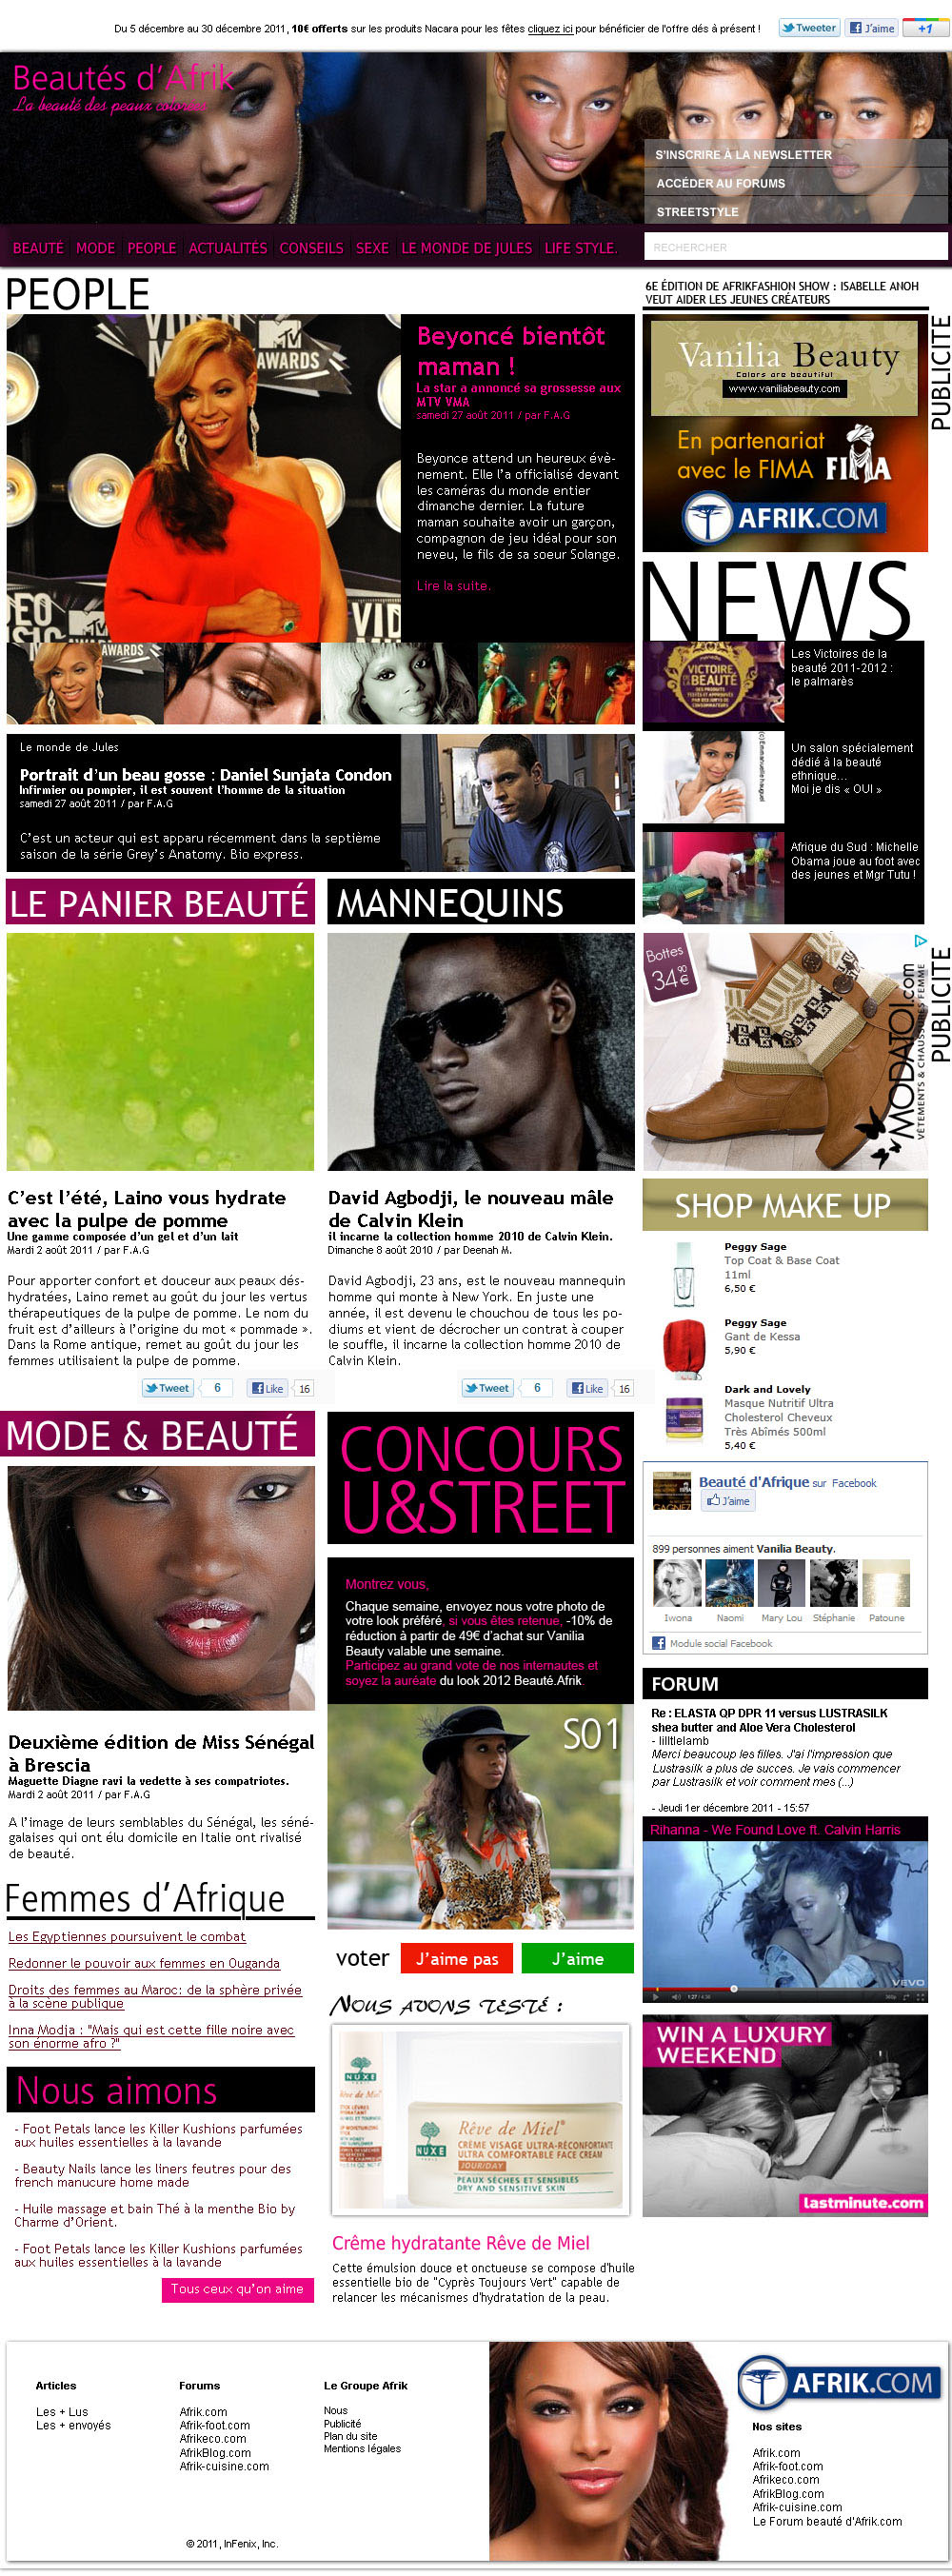 Beauté D'Afrique - Homepage